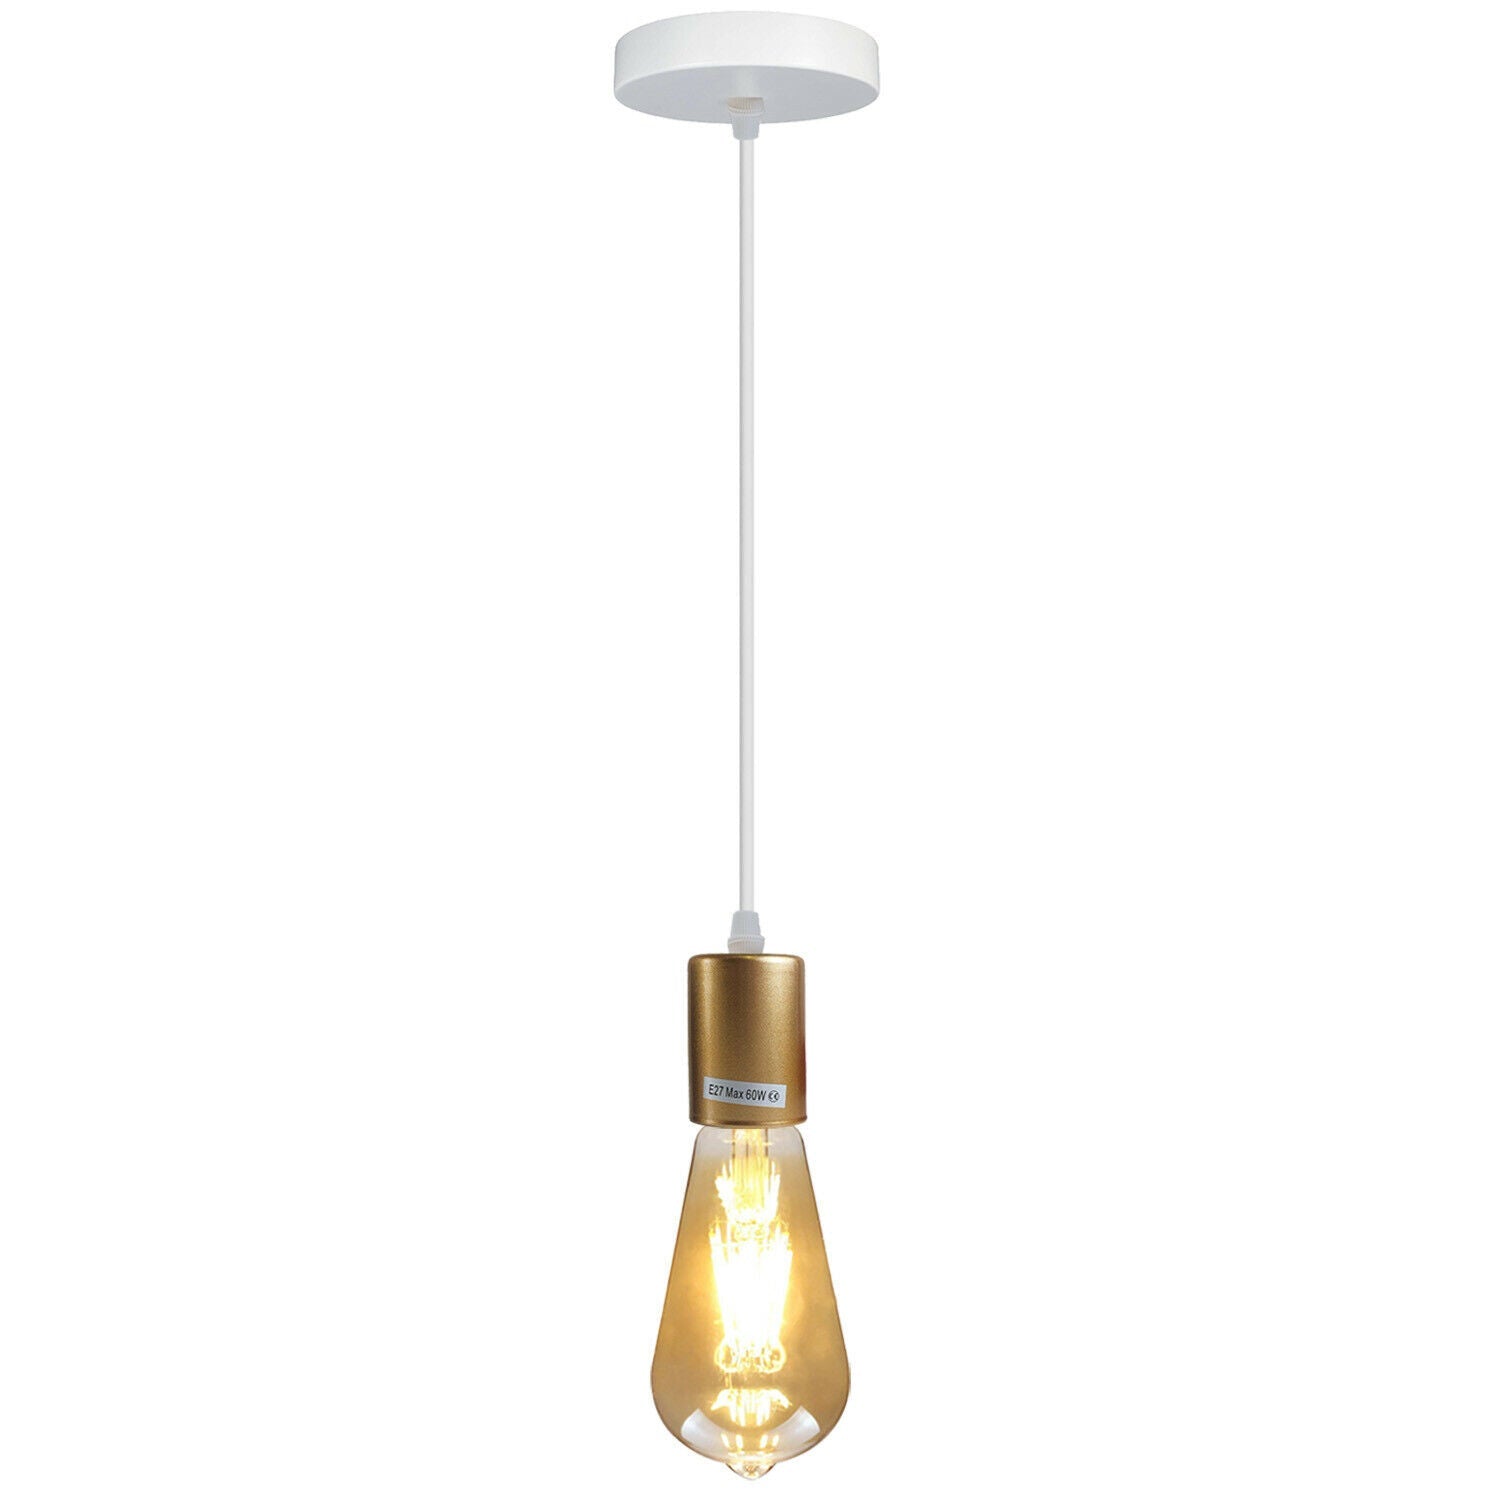 E27 Ceiling Light Fitting Industrial Multi color Pendant Lamp Bulb Holder